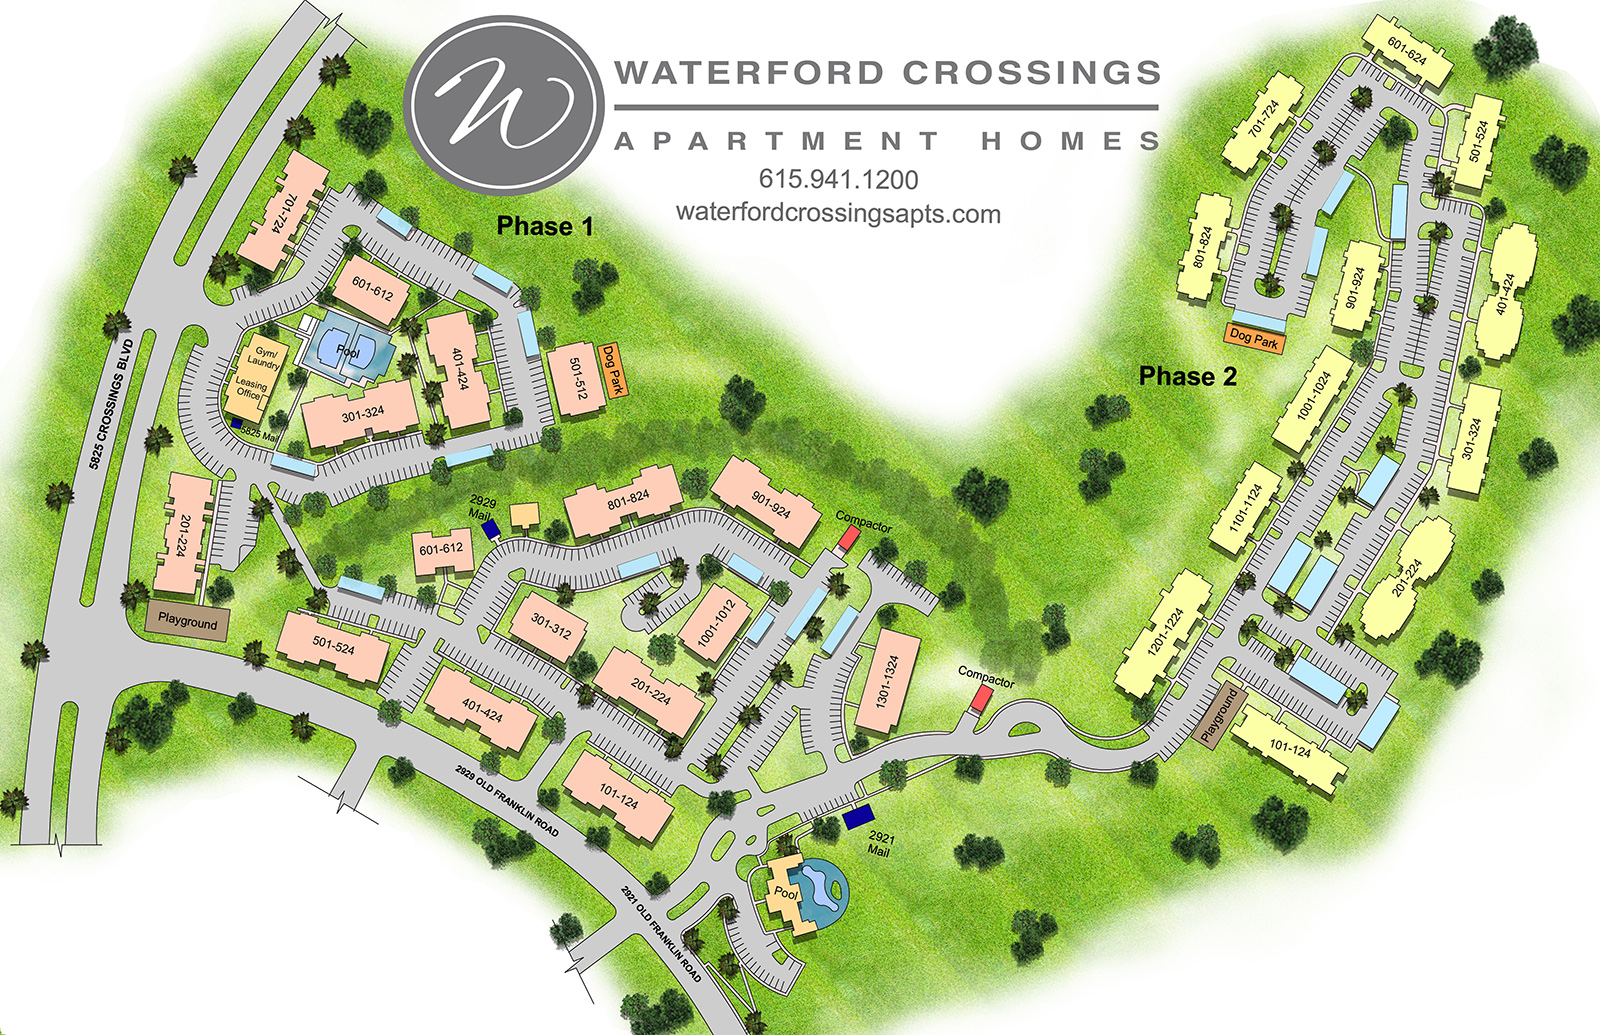 Waterford Crossings Community Map